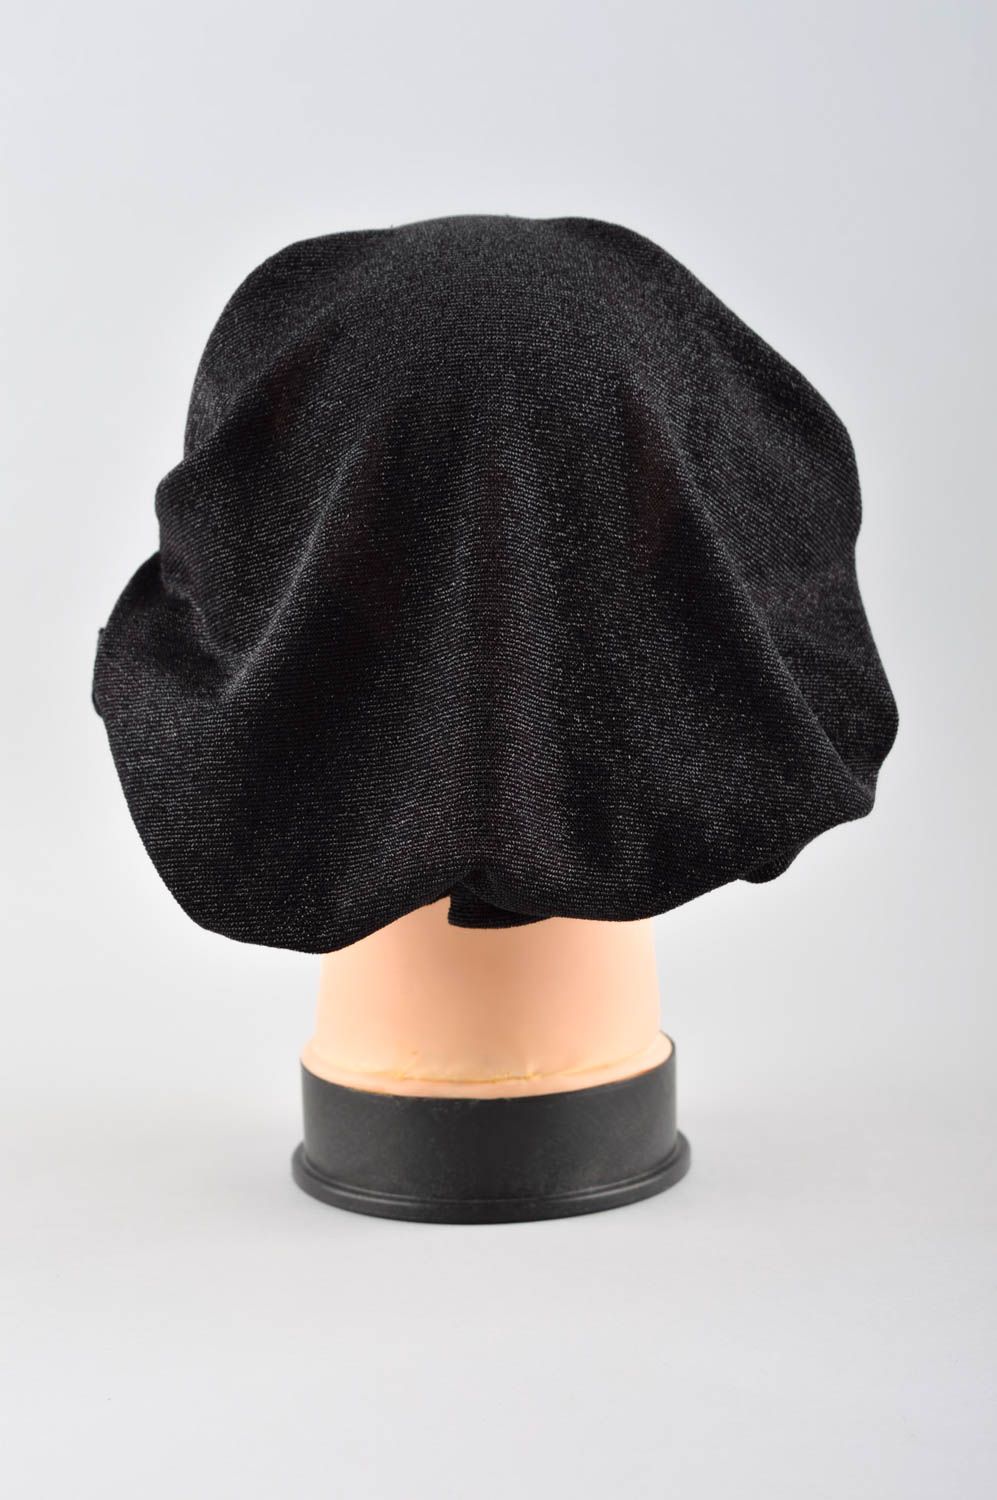 Chapeau tissu fait main Couvre-chef femme Vêtement femme feutre hiver design photo 3